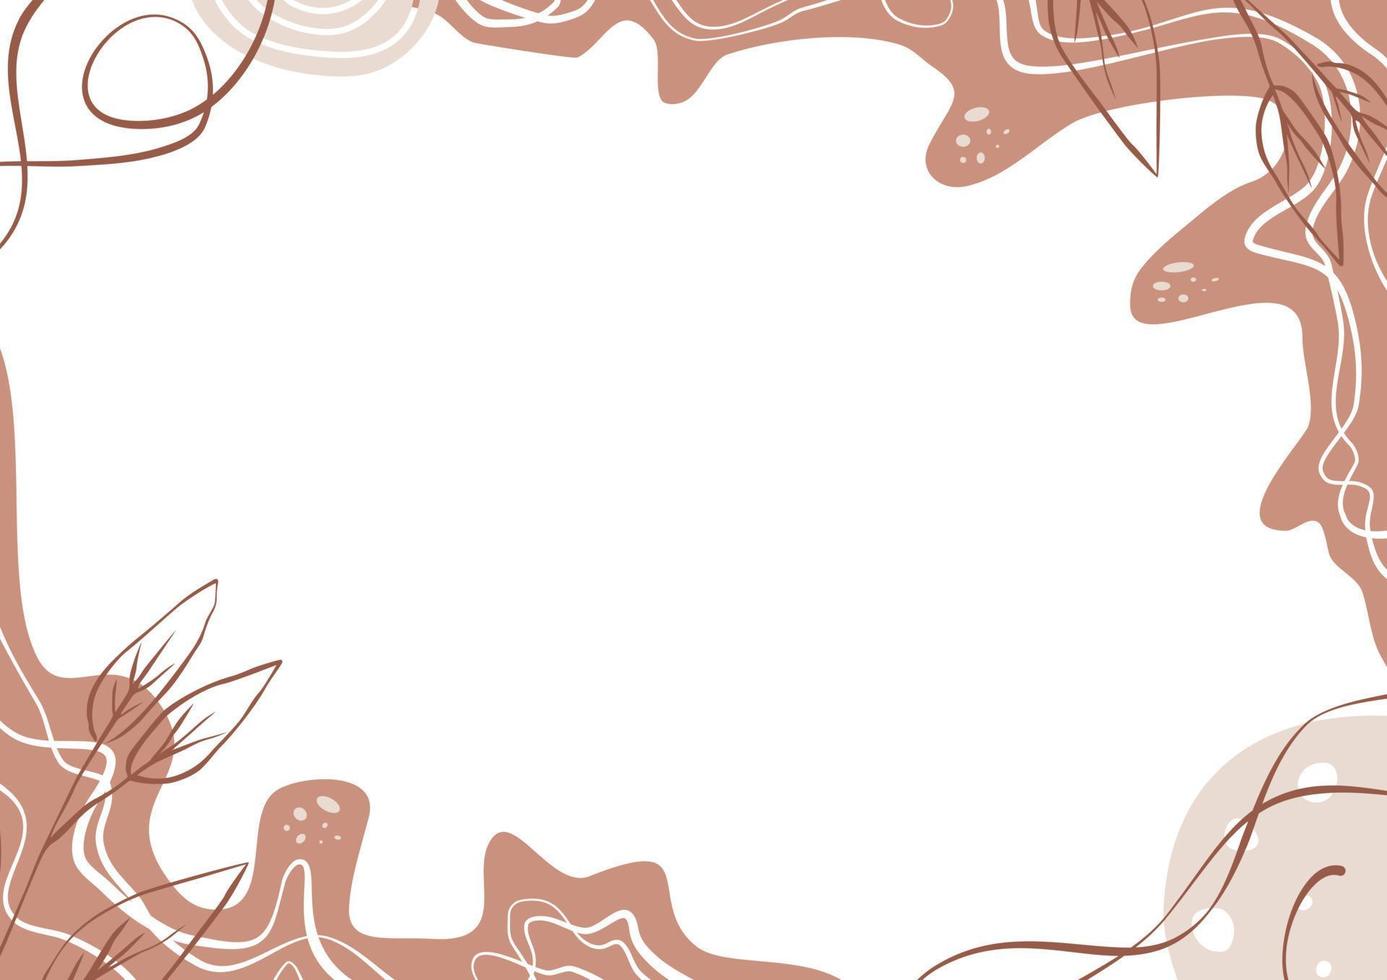 foglie, cerchio, punto e linea sullo sfondo minimo dell'onda. illustrazione vettoriale carta da parati astratta pastello.